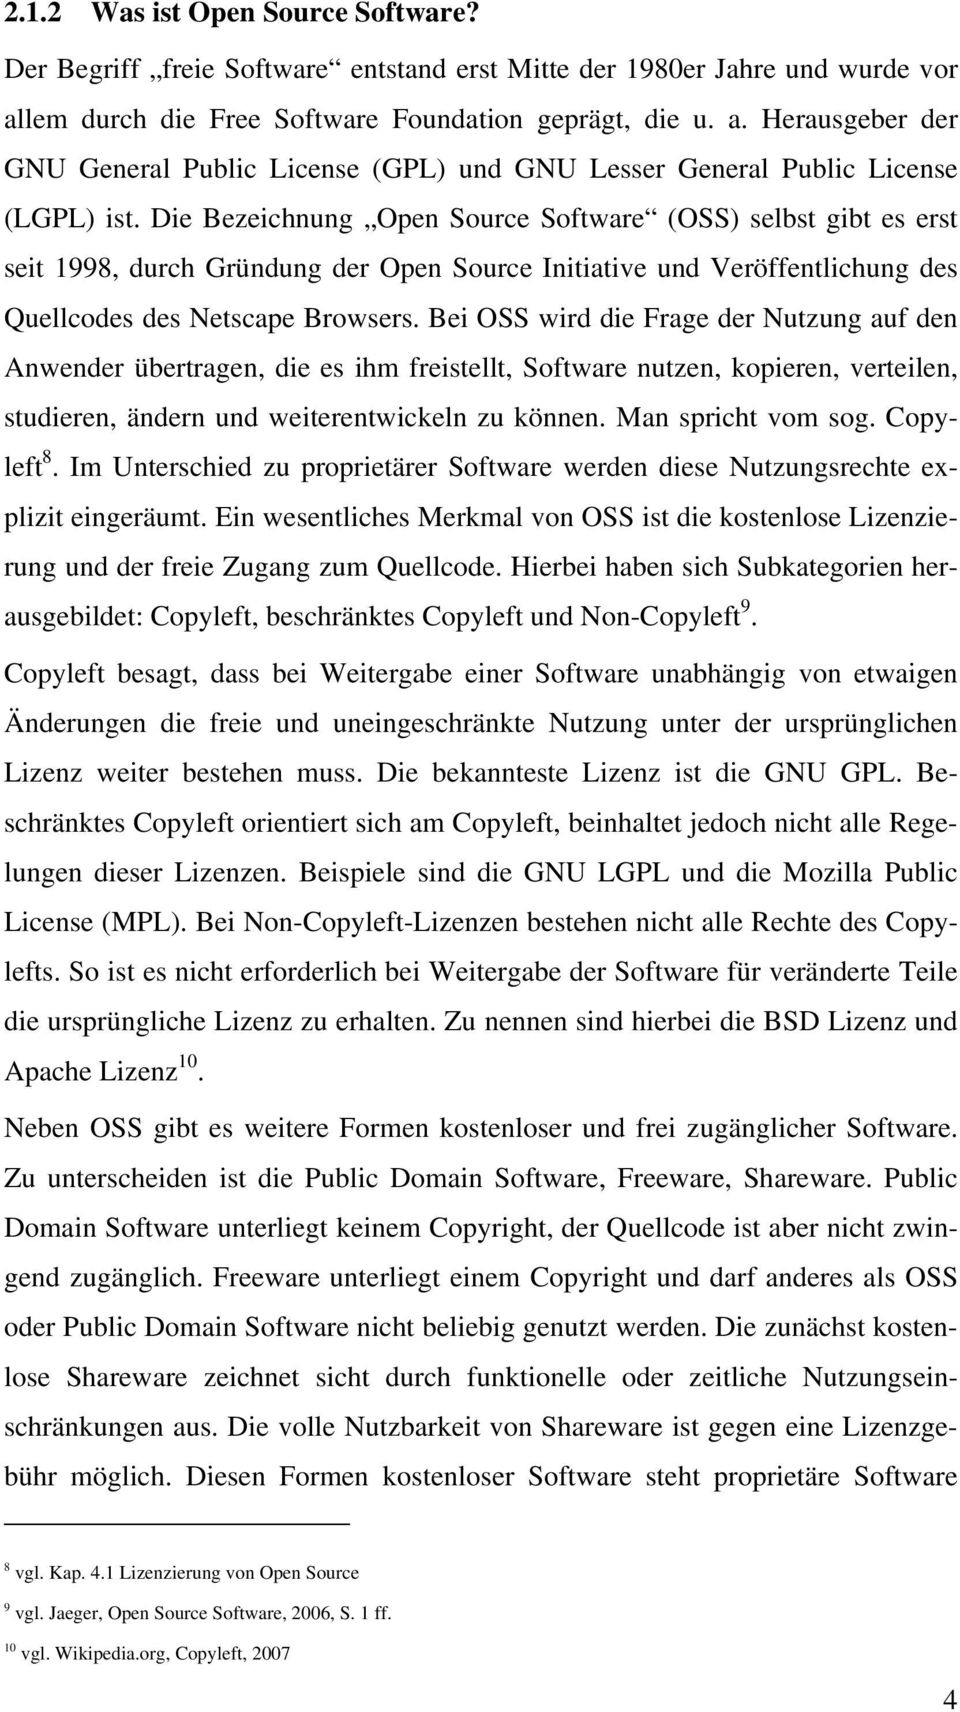 Die Bezeichnung Open Source Software (OSS) selbst gibt es erst seit 1998, durch Gründung der Open Source Initiative und Veröffentlichung des Quellcodes des Netscape Browsers.